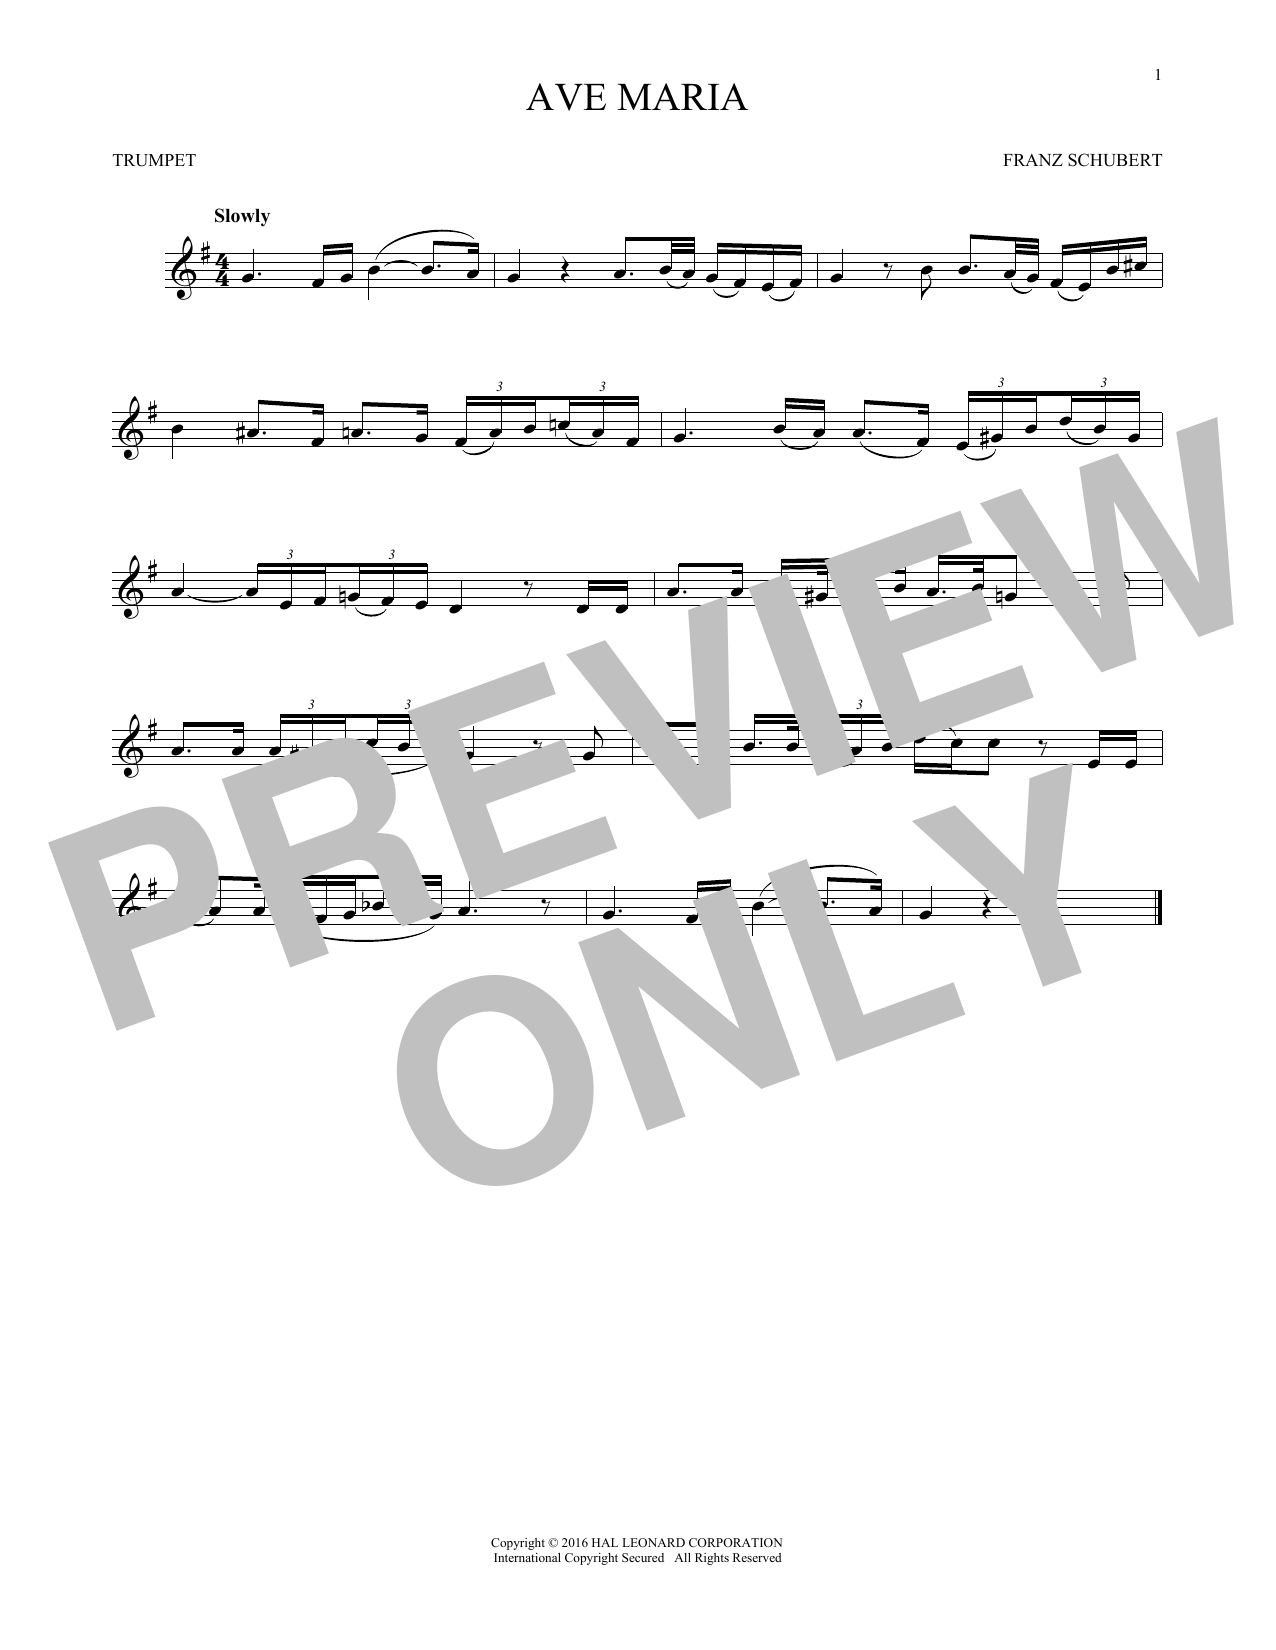 Ave Maria, Op. 52, No. 6 (Trumpet Solo) von Franz Schubert